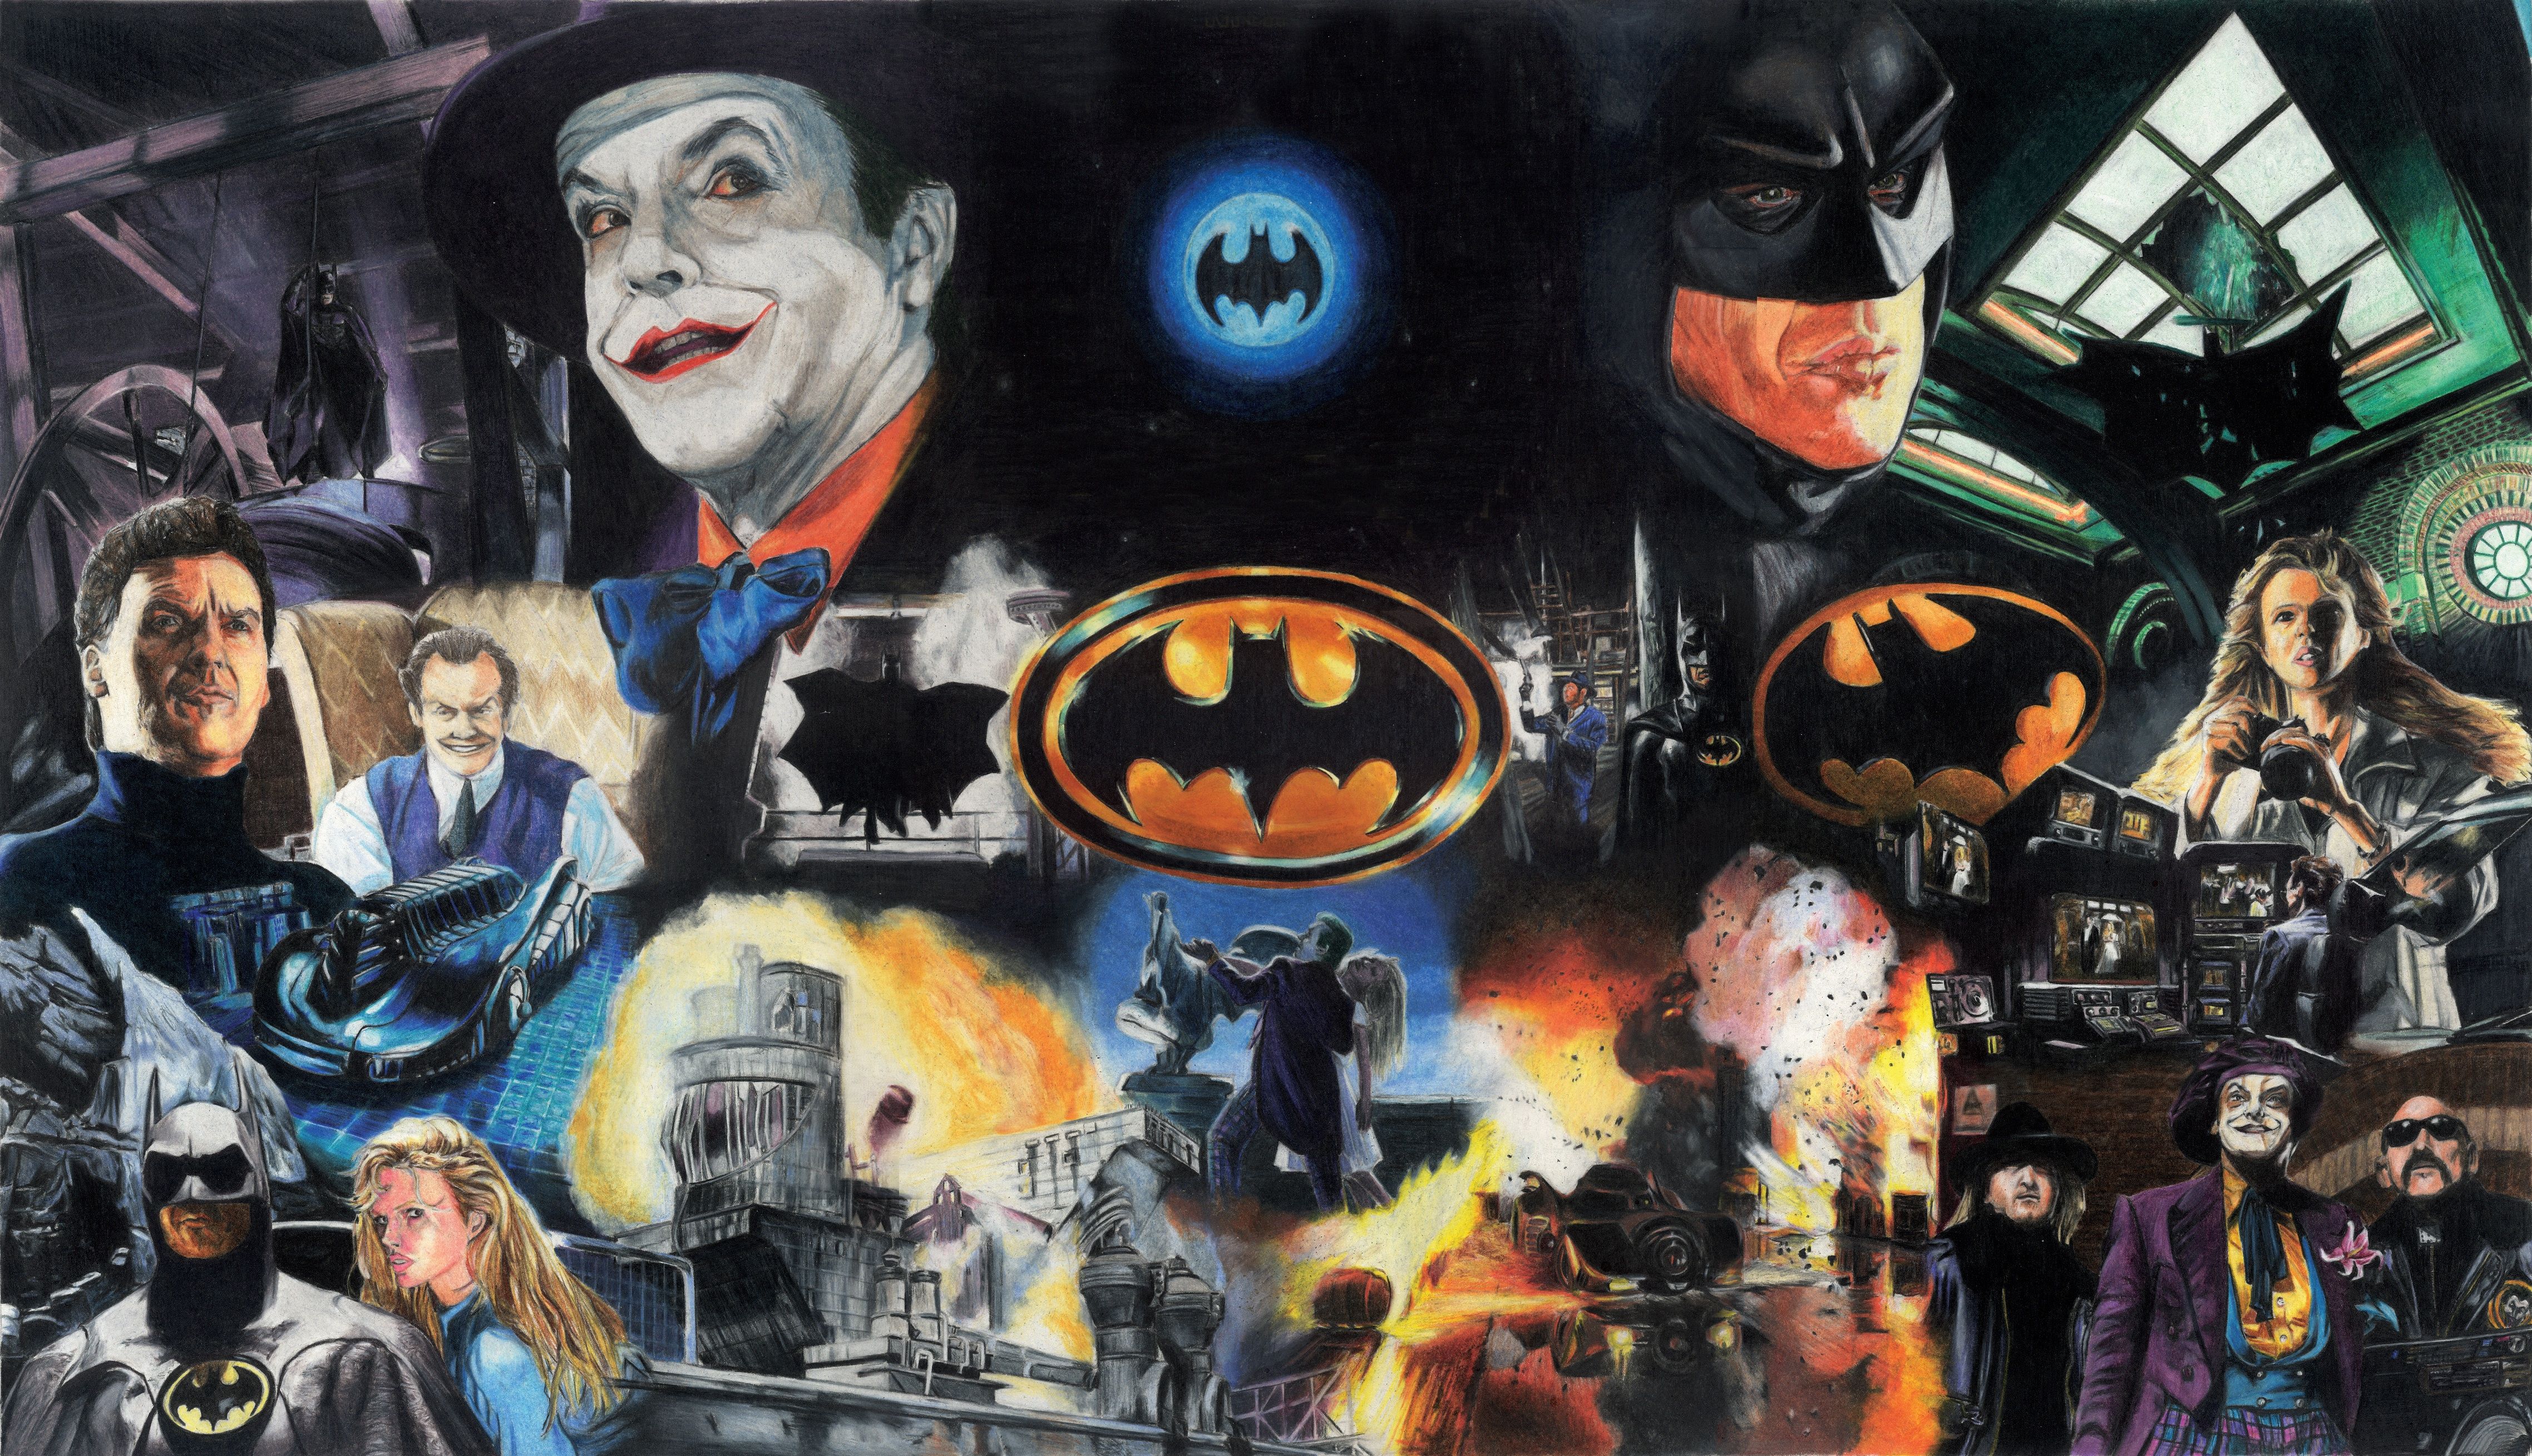 1989 Wallpaper. Batman 1989 Wallpaper